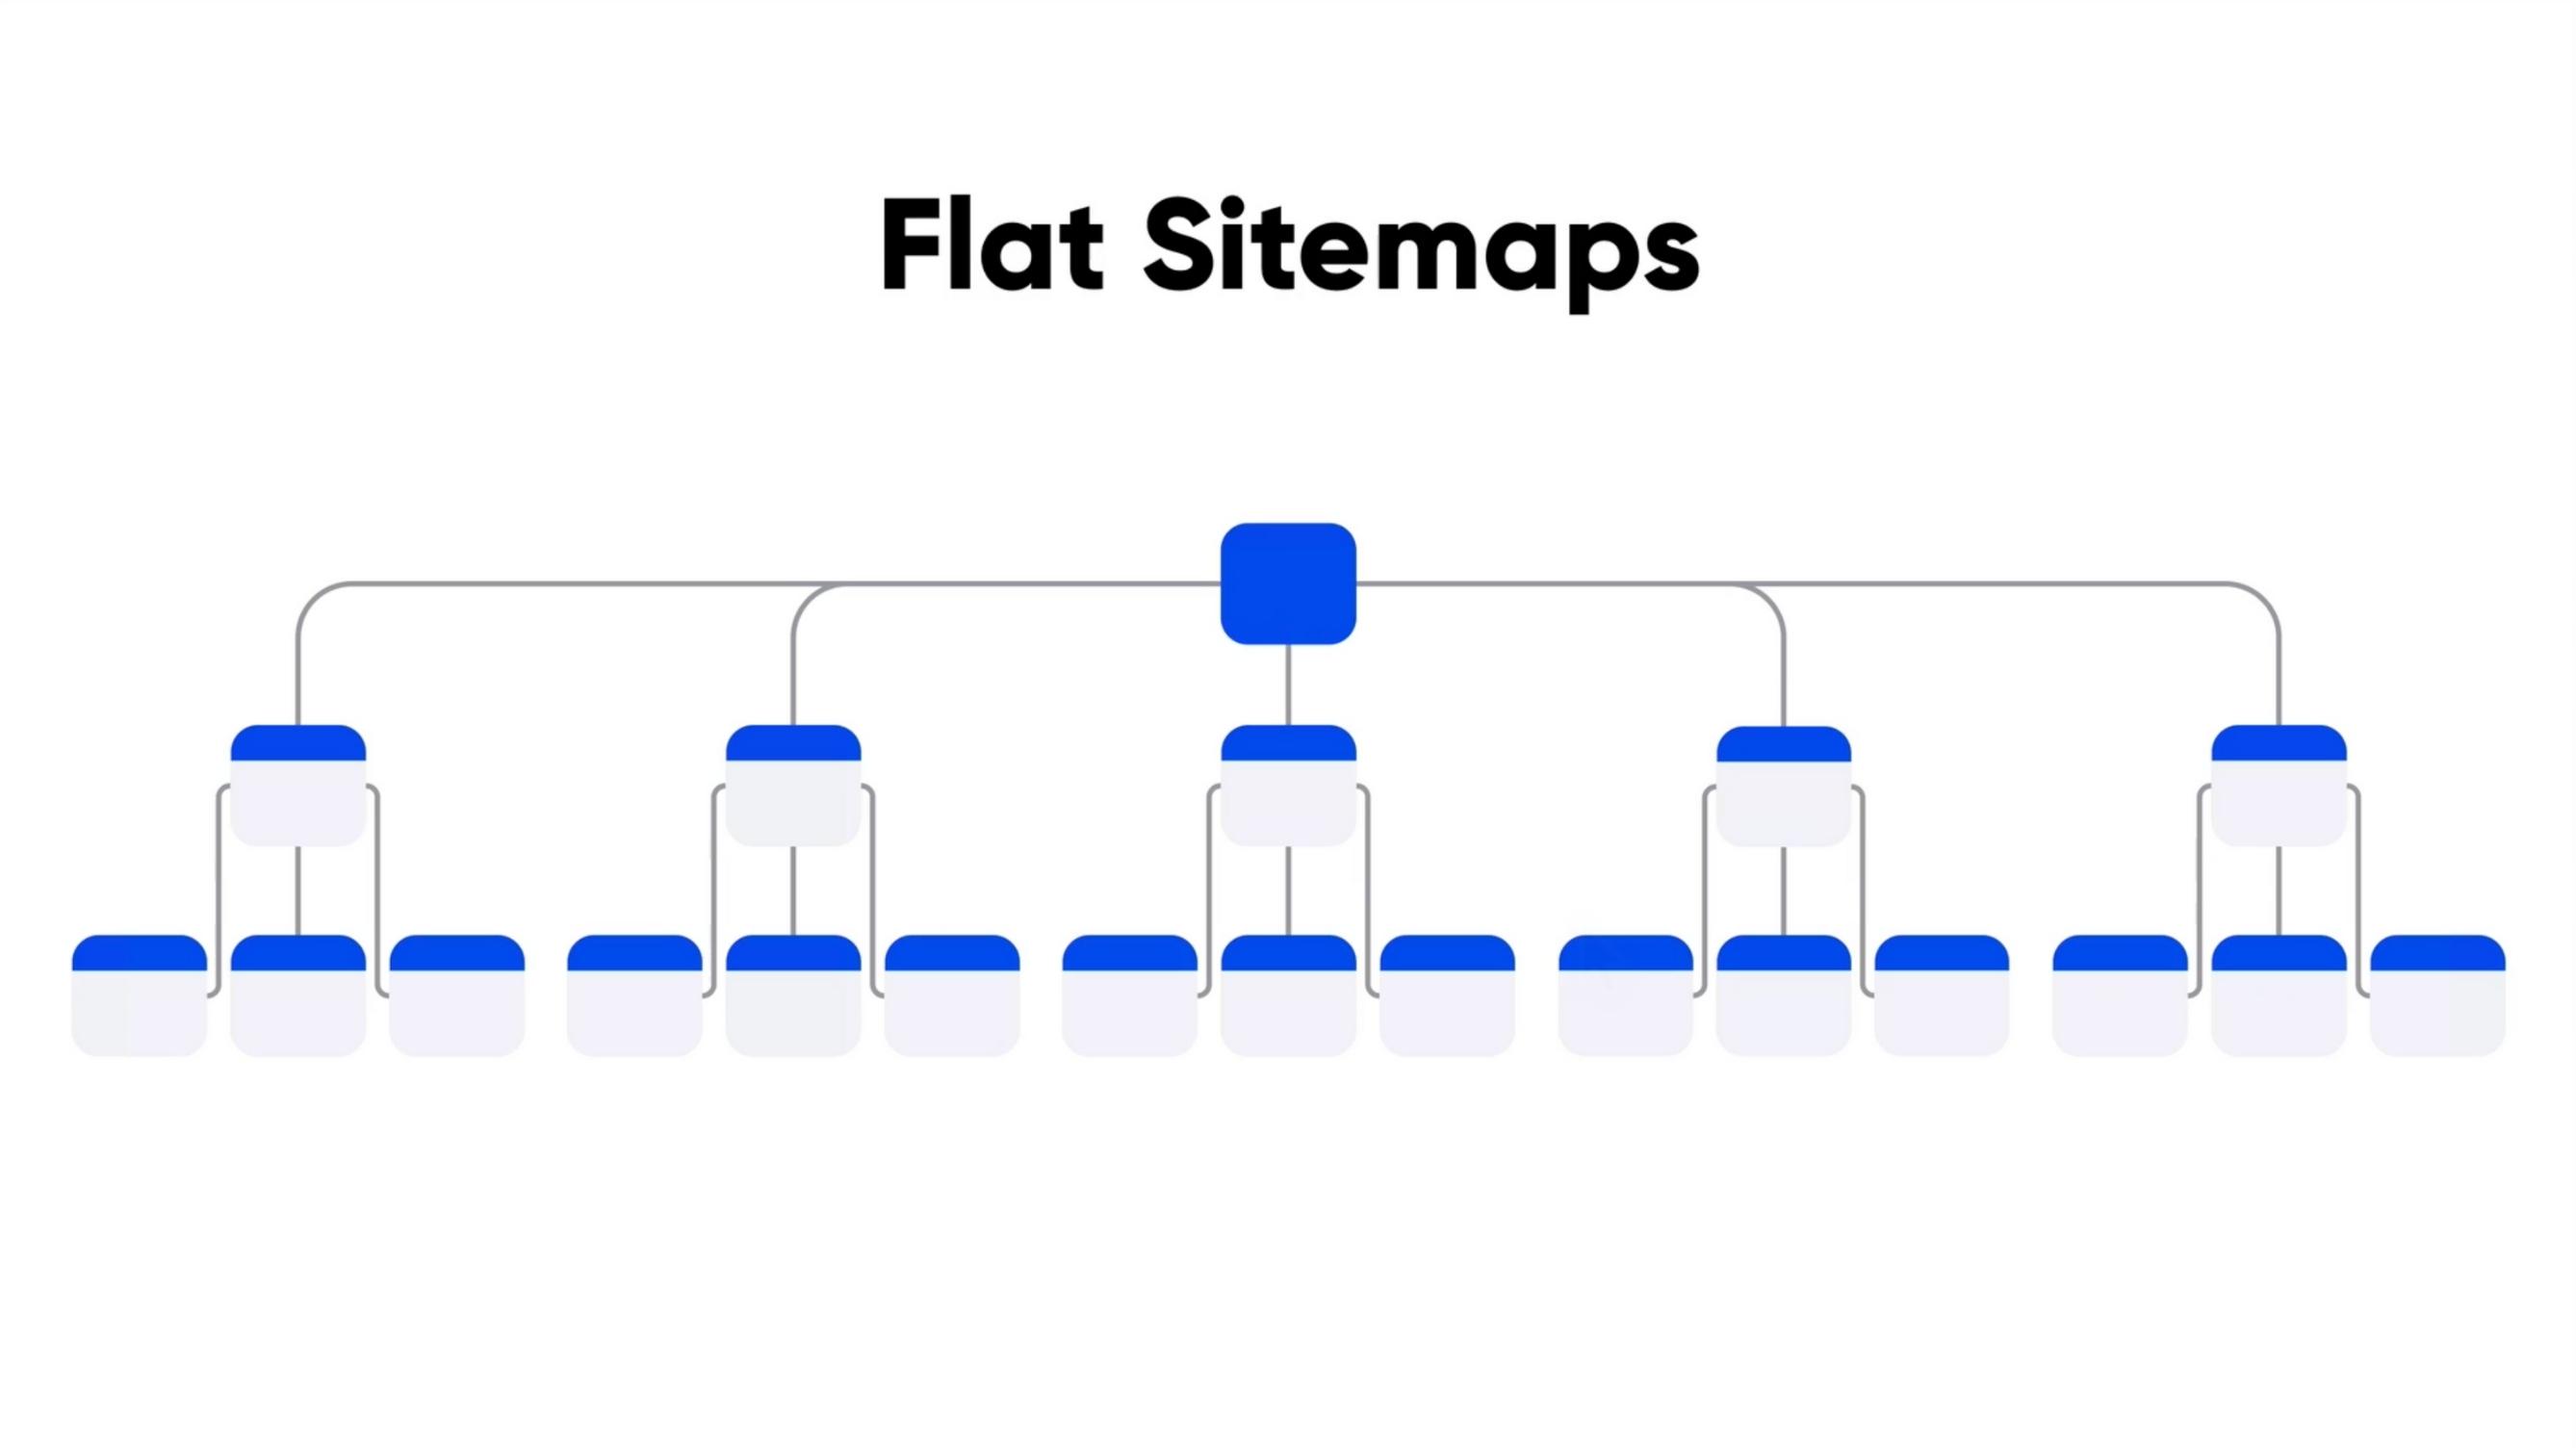 6 - FlatSitemaps